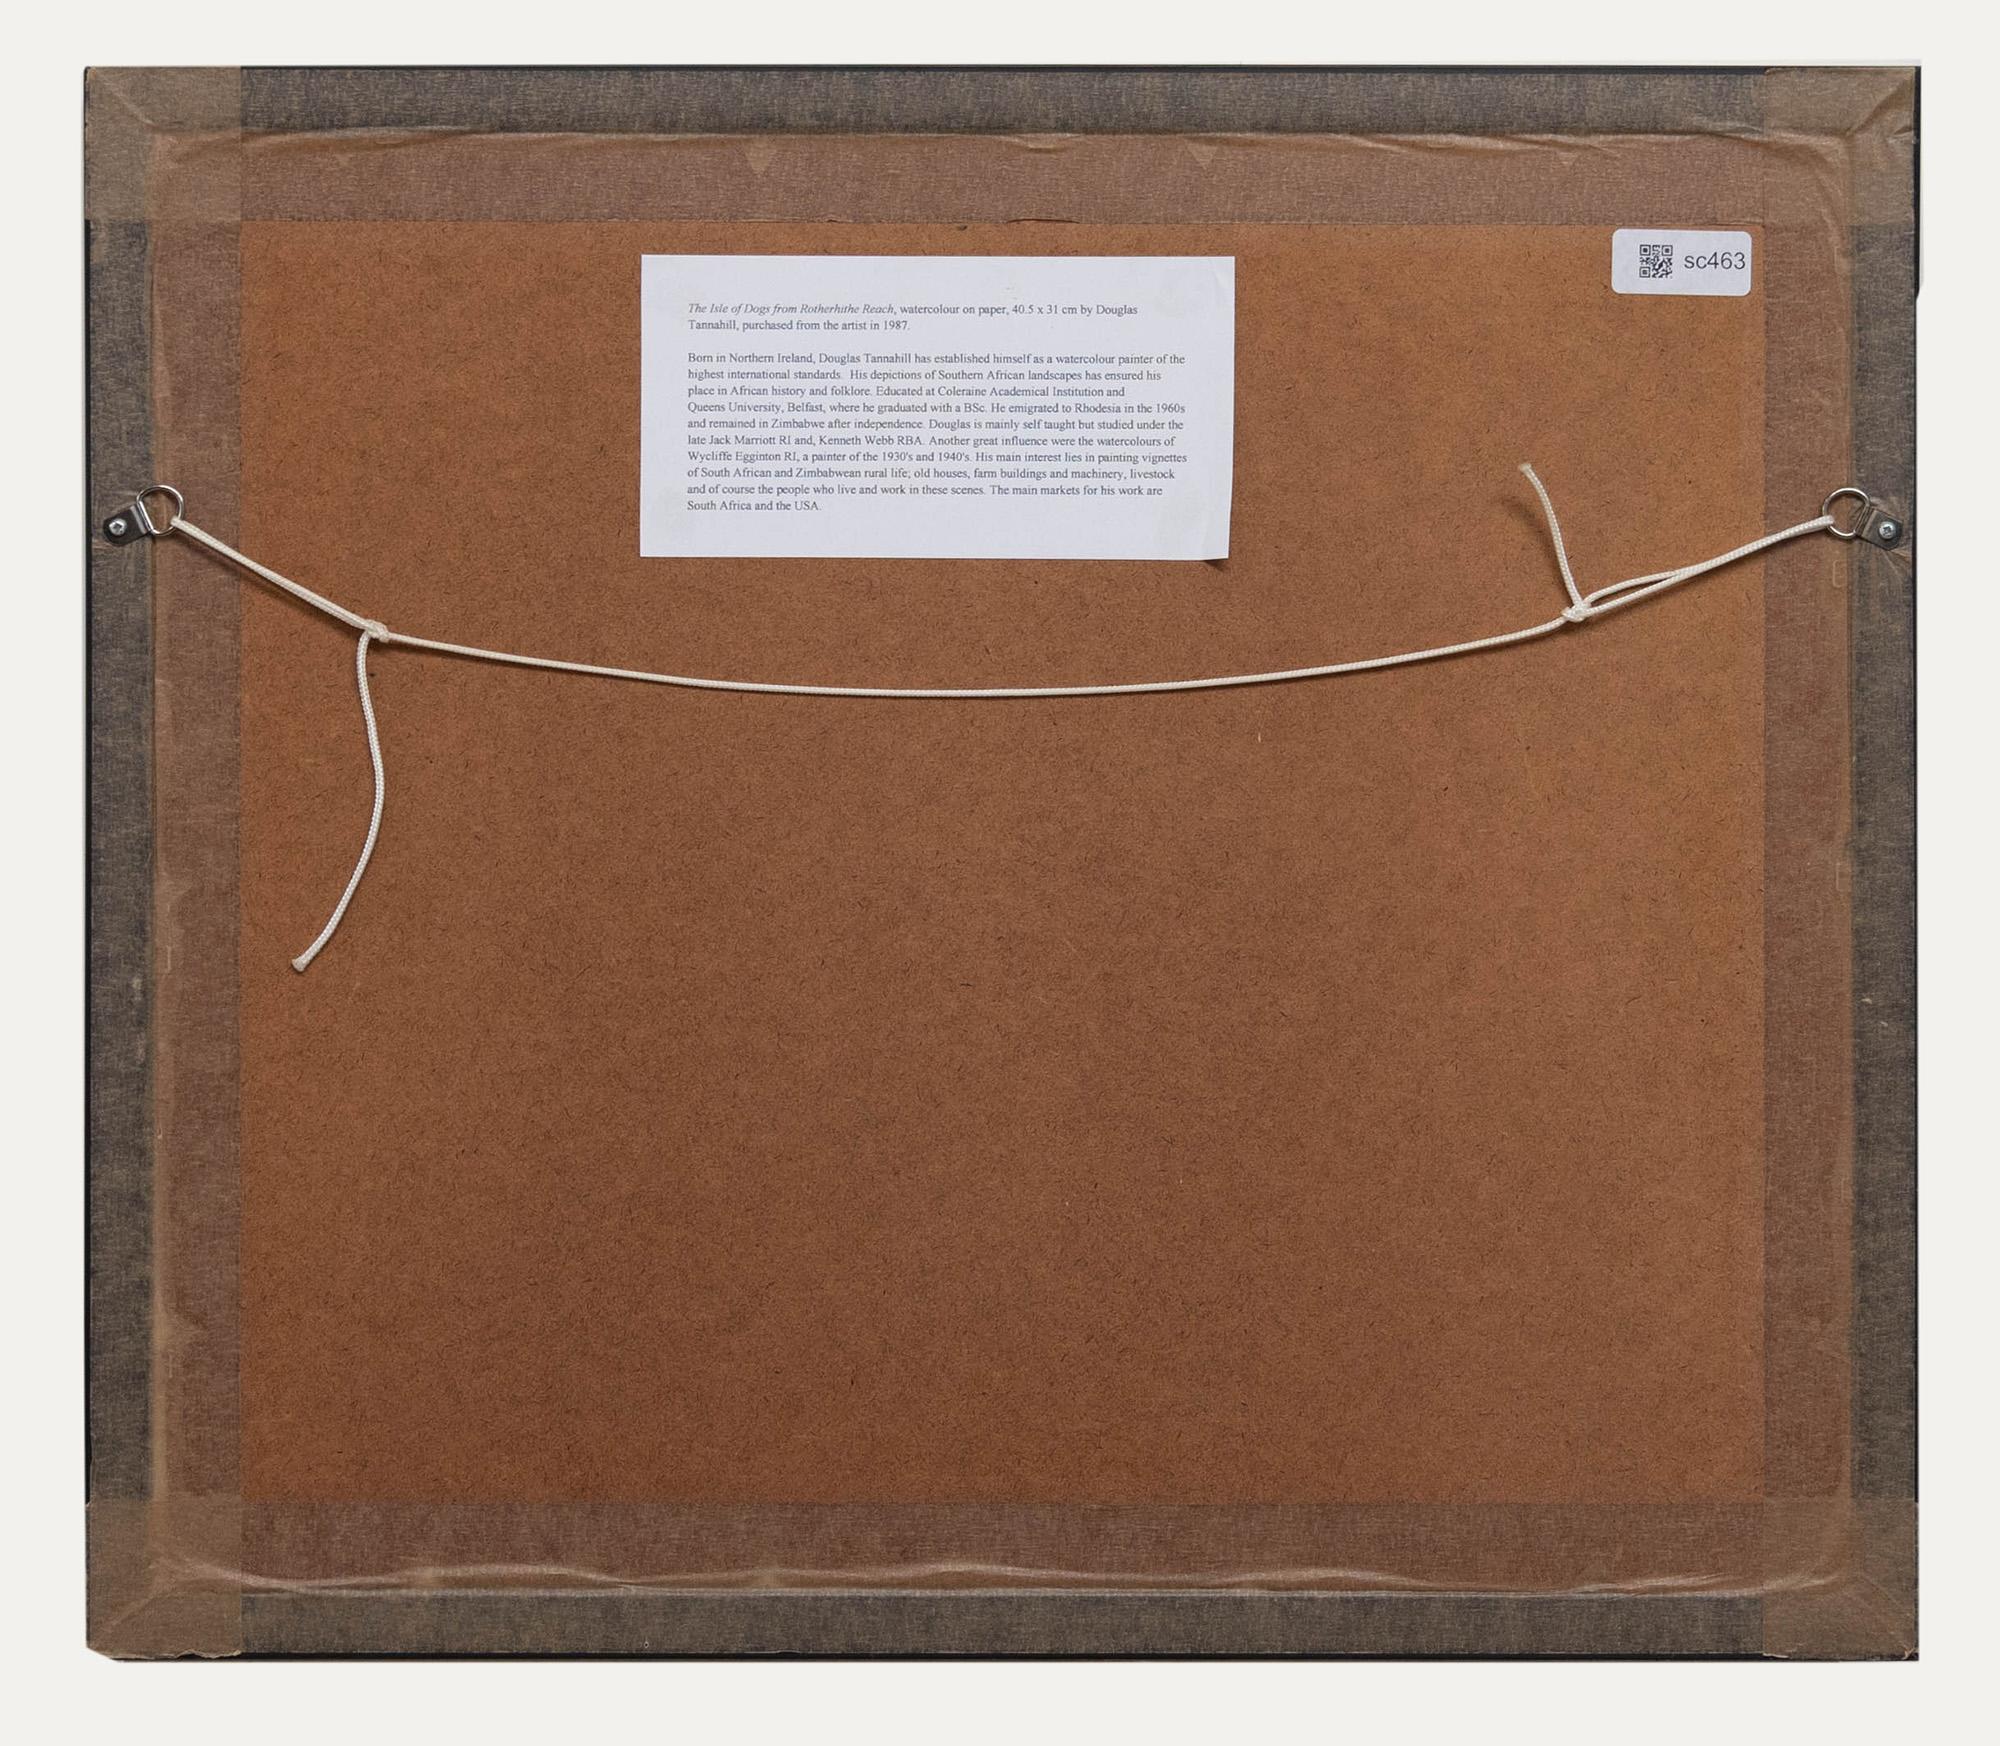 Signiert und datiert (1983) unten links. In einem vergoldeten Rahmen mit biografischen Informationen auf der Rückseite präsentiert. Auf Aquarellpapier.